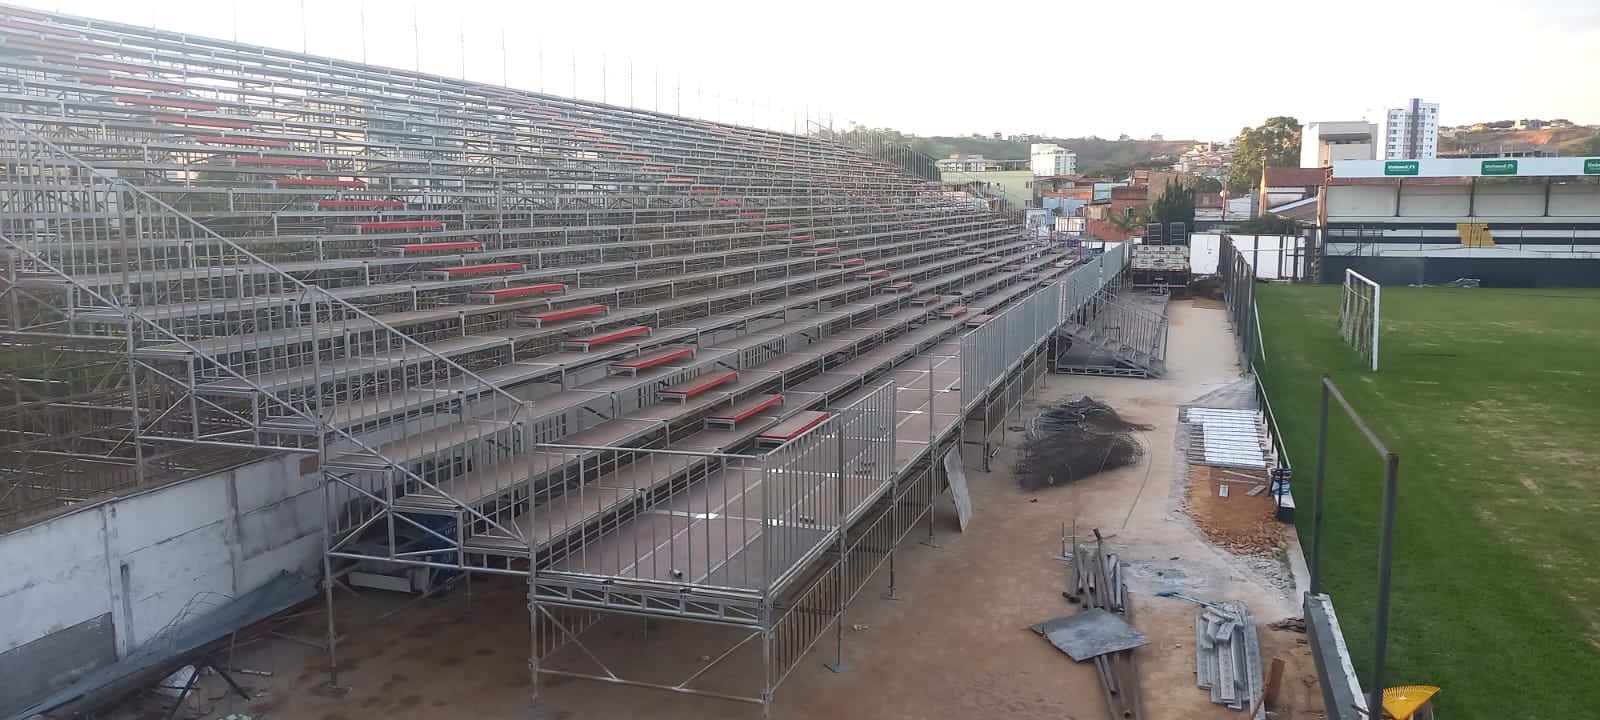 Athletic está instalando arquibancada metálica para aumentar capacidade do estádio - (foto: Reprodução/Redes Sociais)